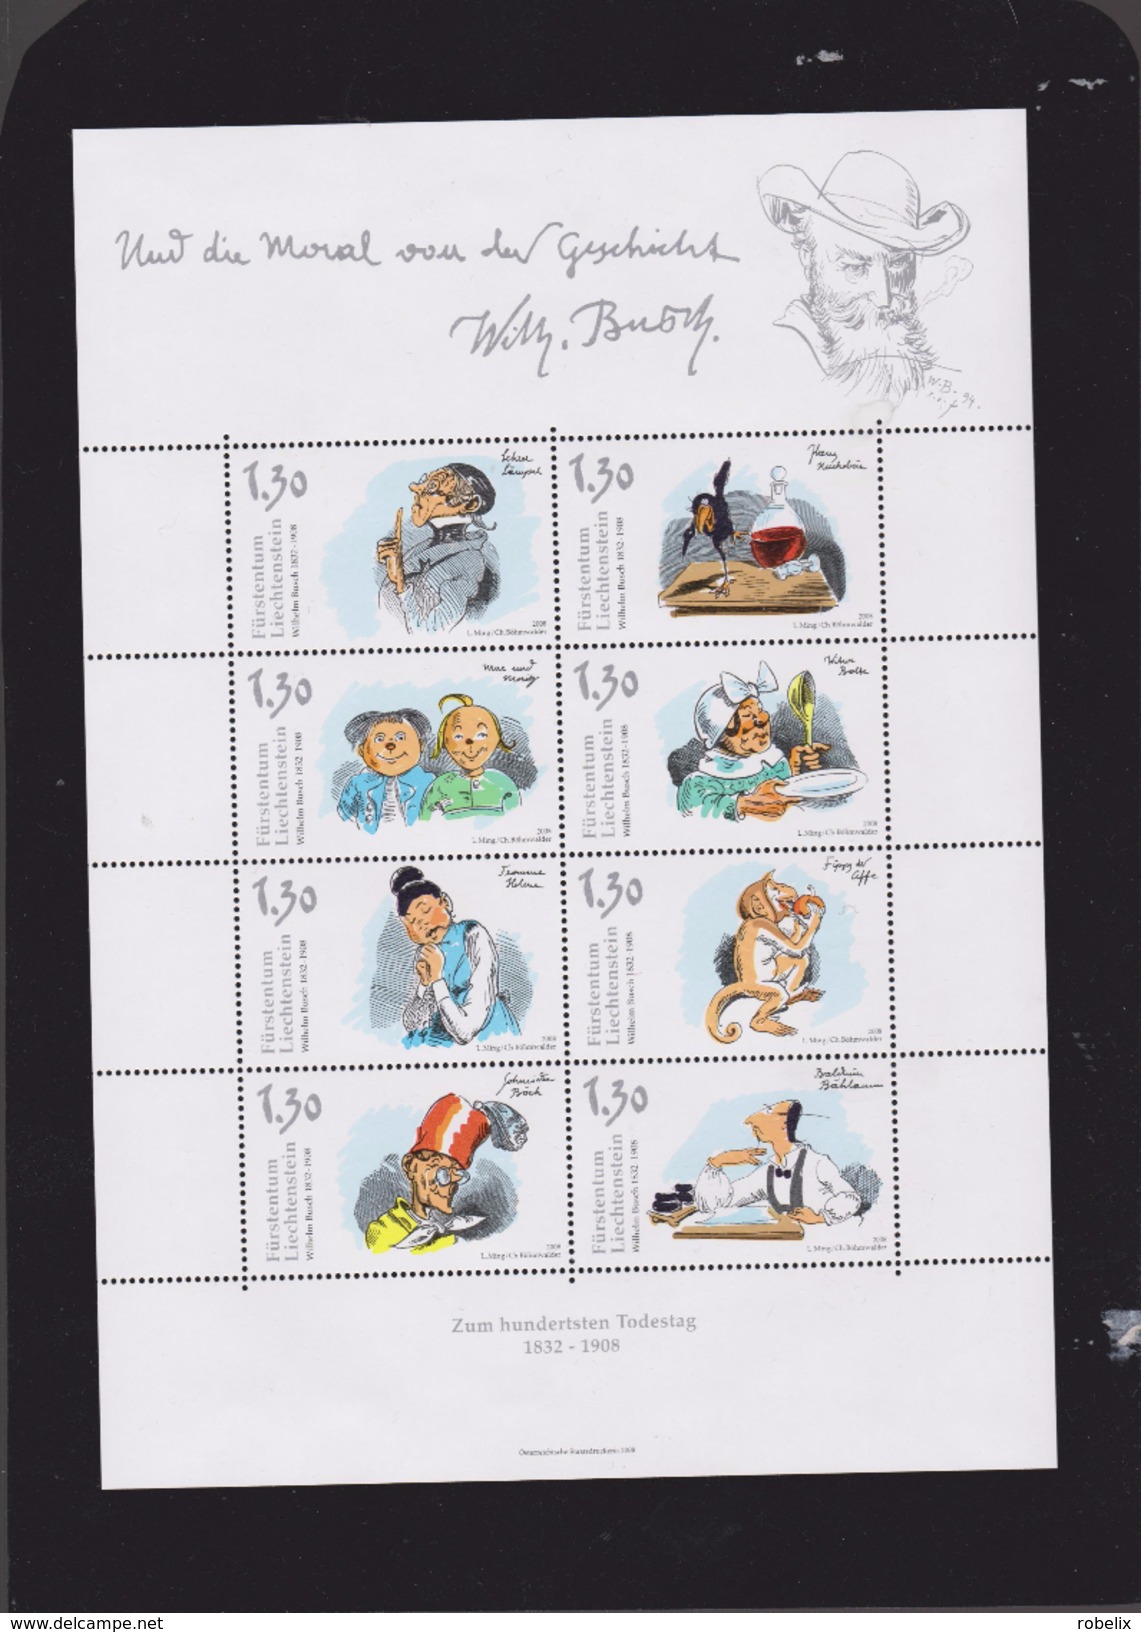 LIECHTENSTEIN  2008-WILHELM BUSCH- German Humorist, Poet, Illustrator And Painter.-Sheet(Klb) MNH** - Unused Stamps